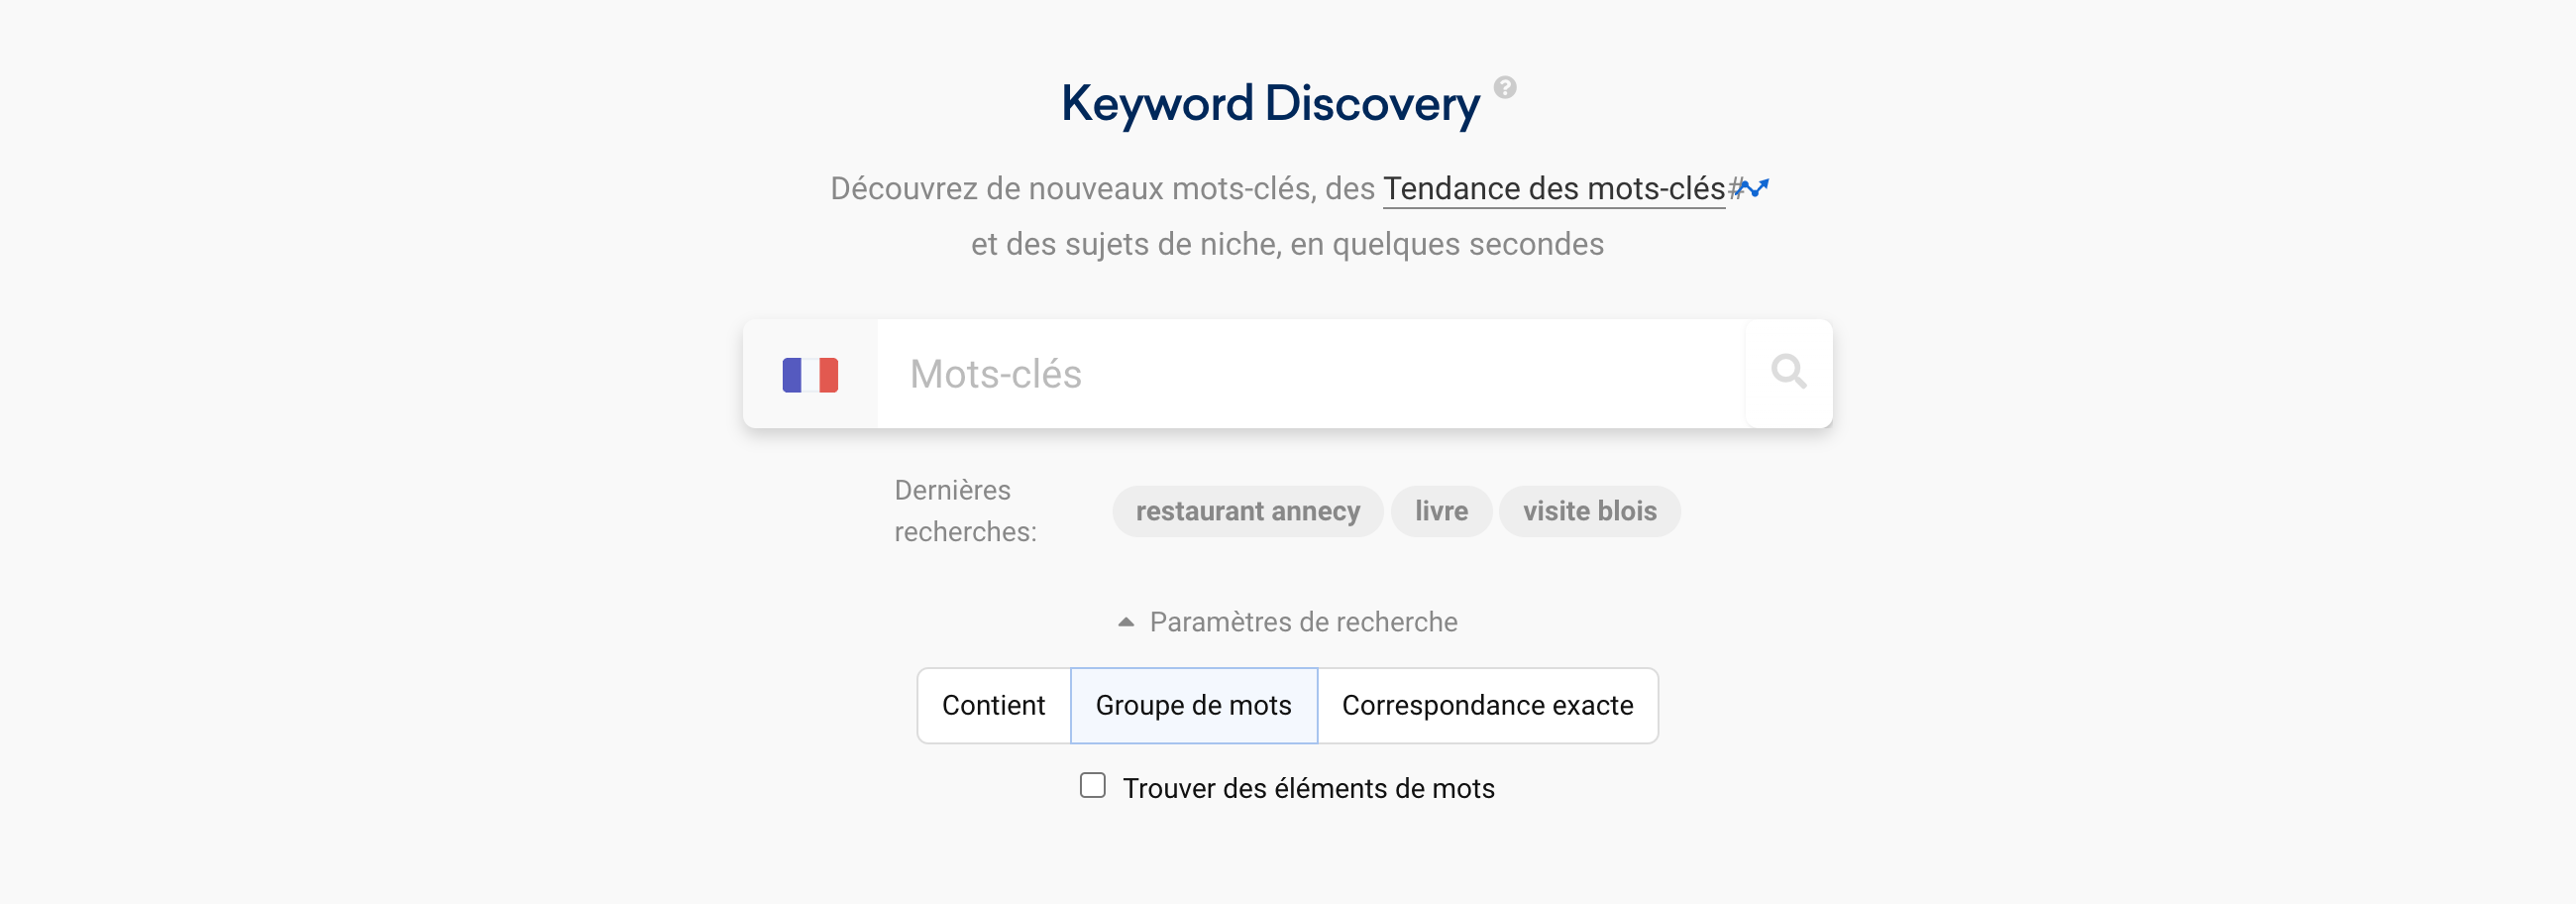 Paramètres de recherche disponibles pour Keyword Discovery